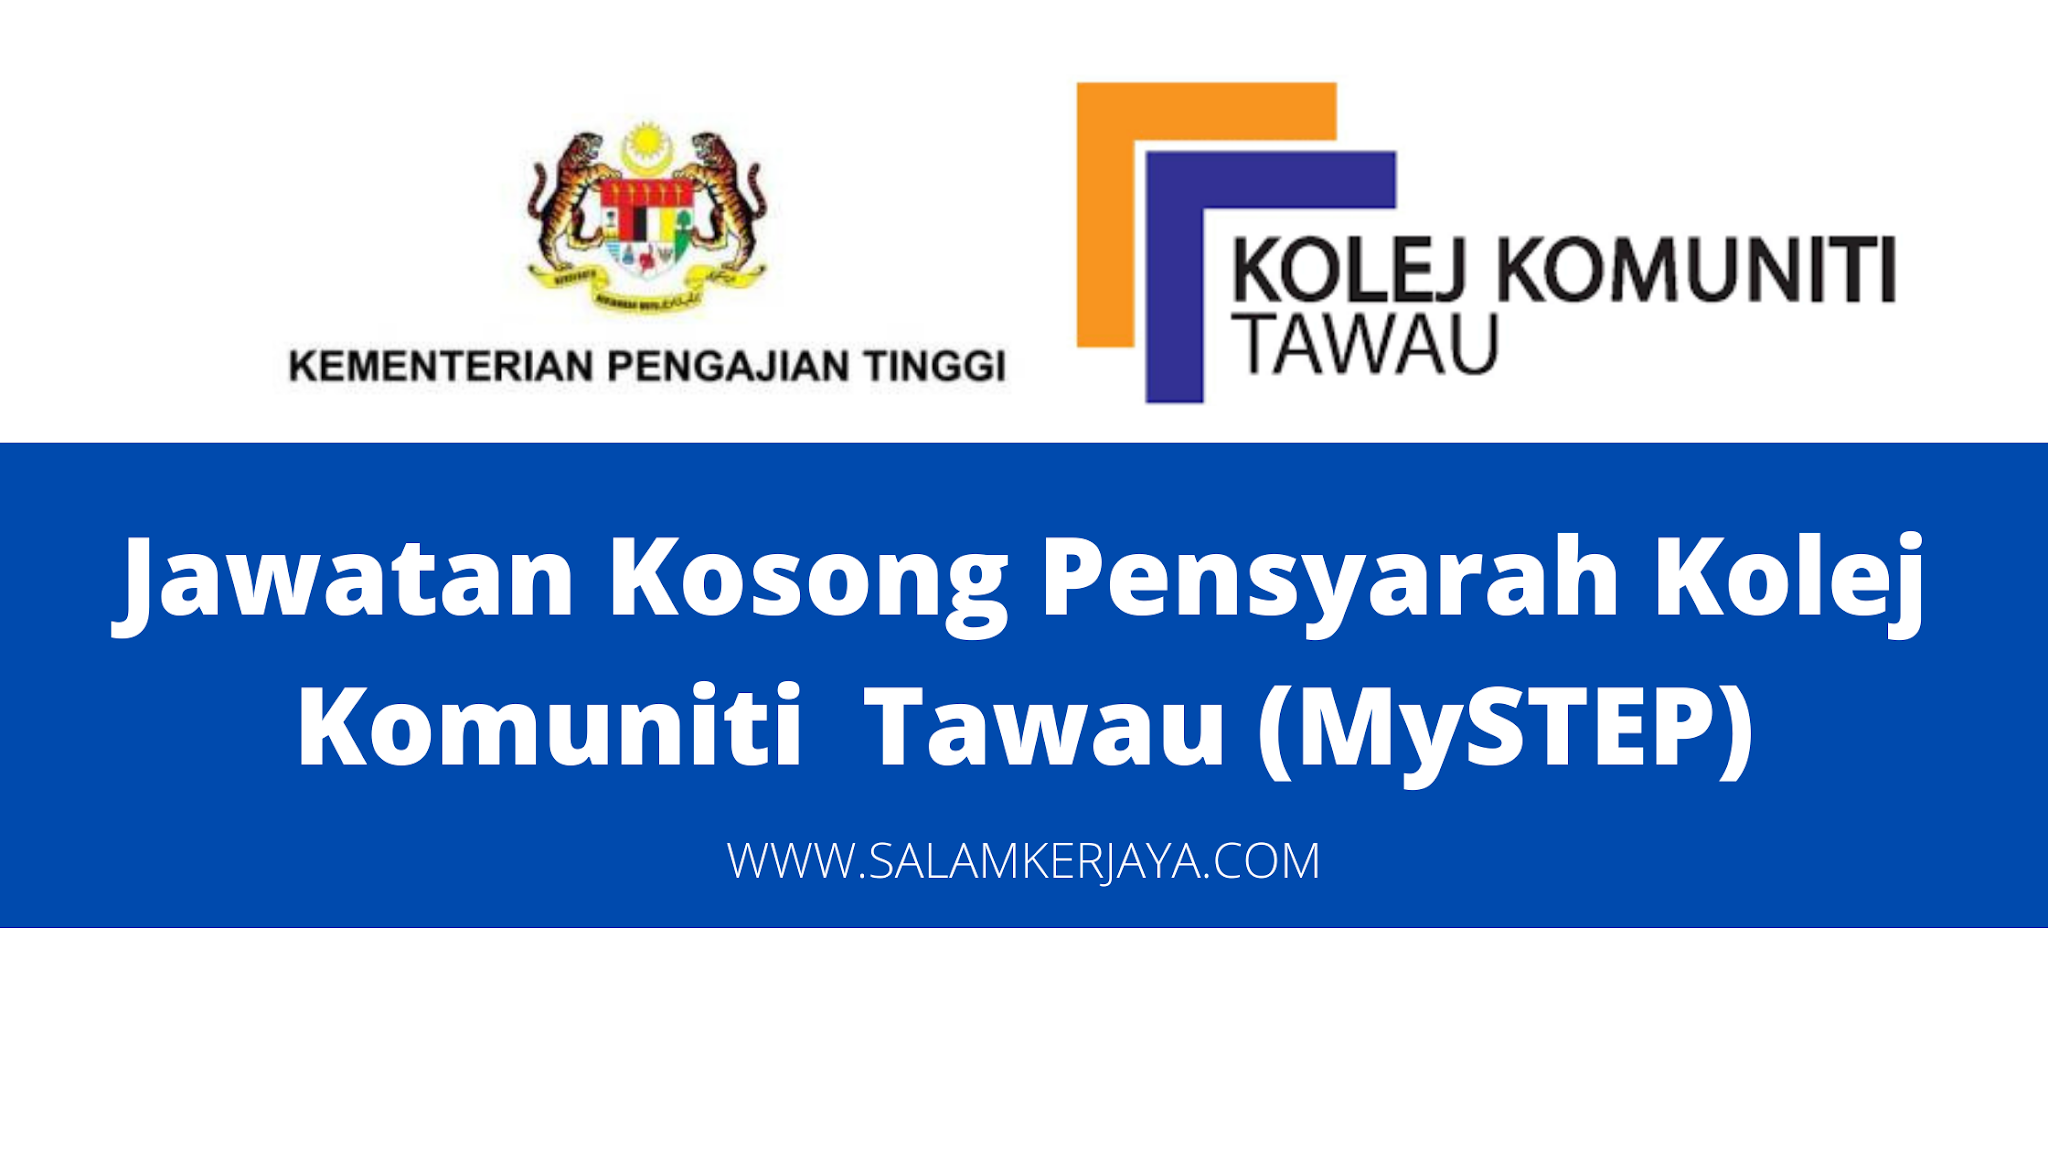 Jawatan Kosong Pensyarah Kolej Komuniti Tawau Sabah Mystep